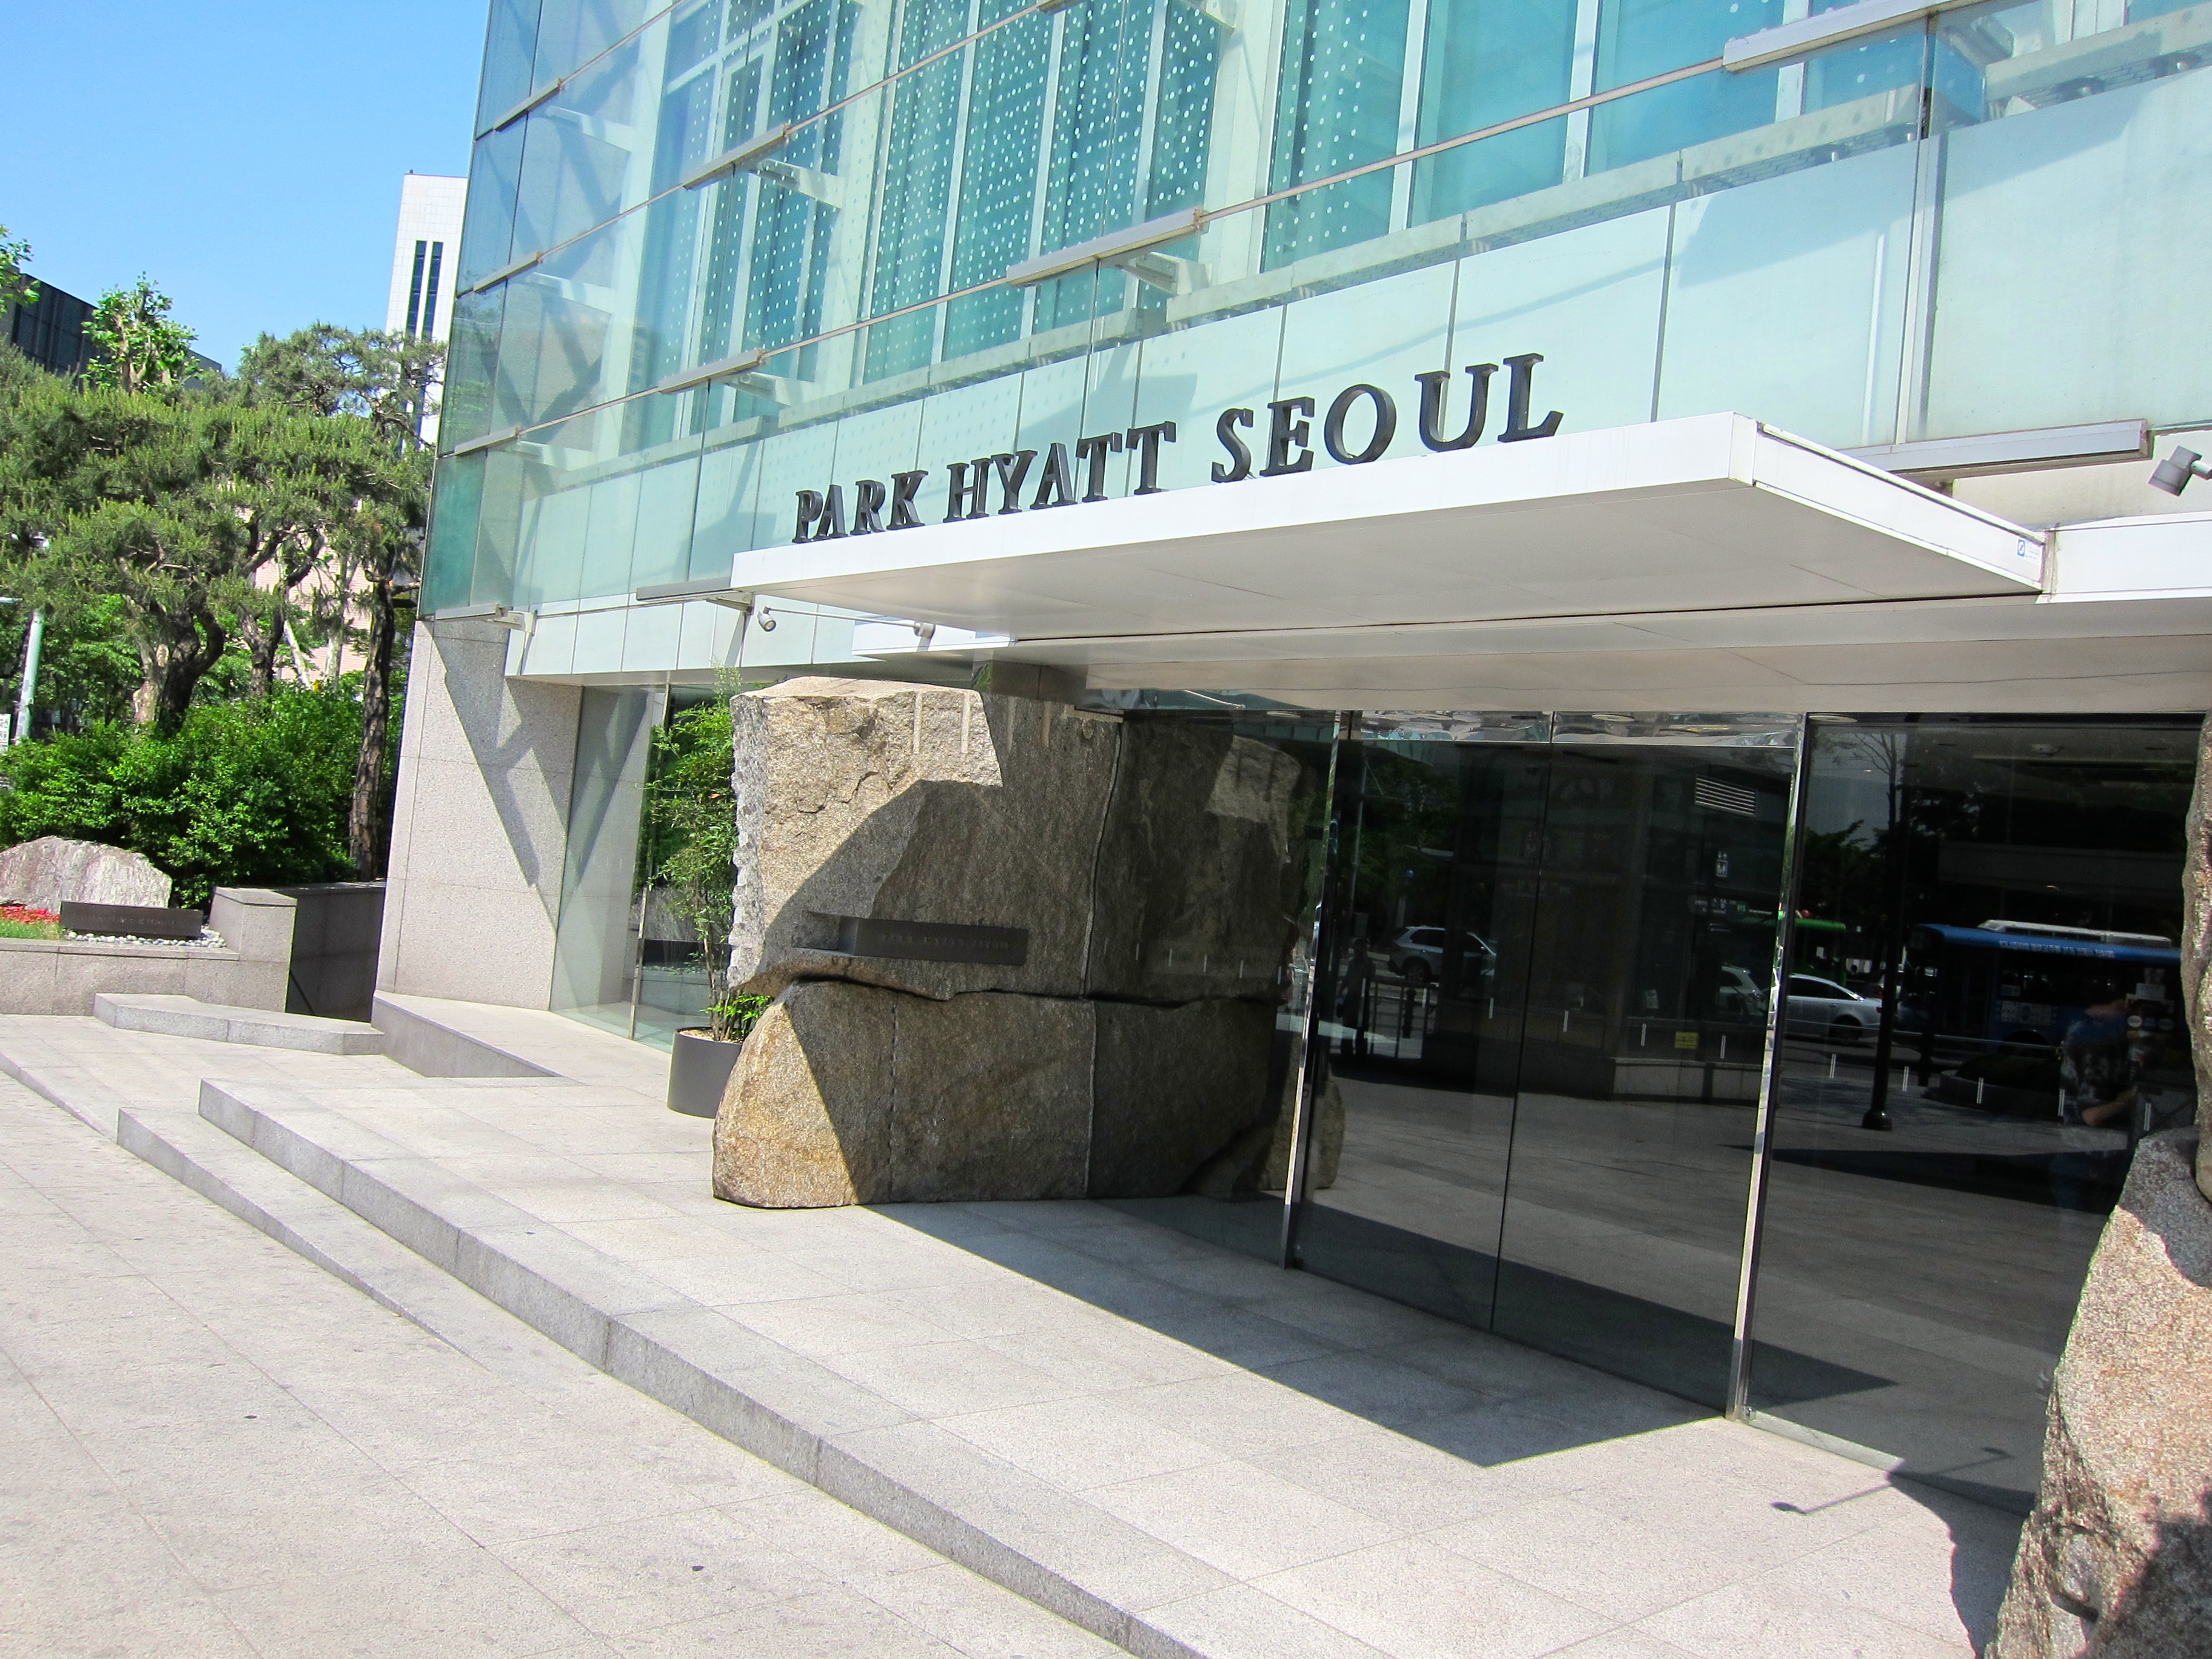 Hotel Review: Park Hyatt Seoul